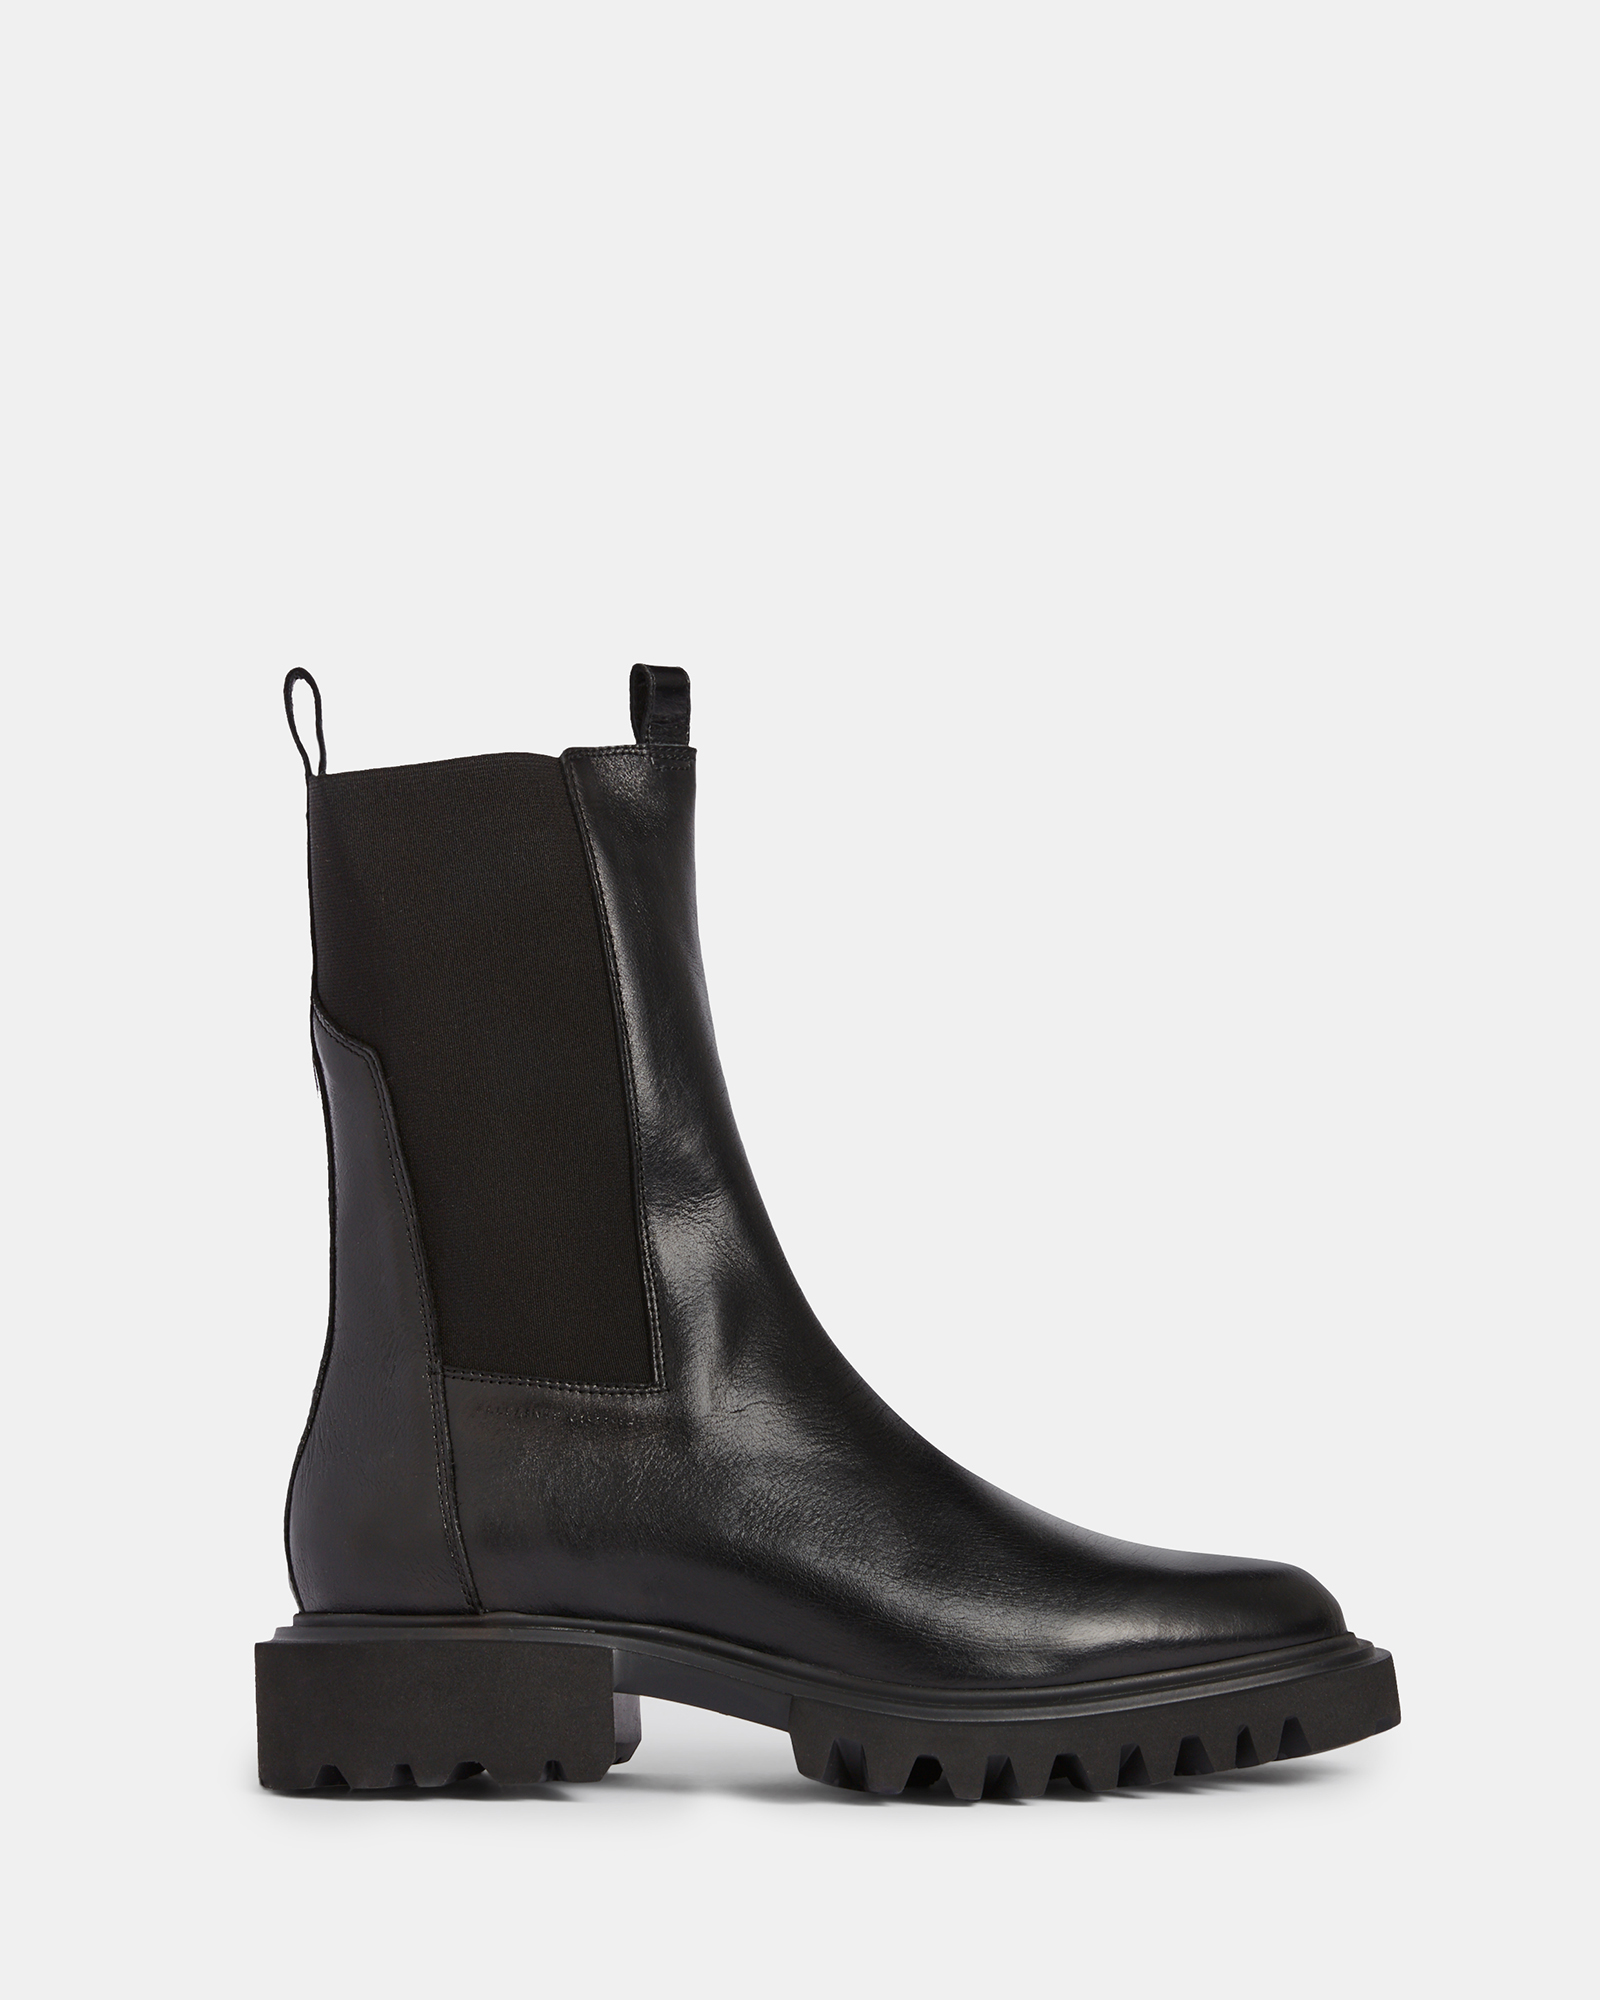 AllSaints Hallie Leather Boots,, Black